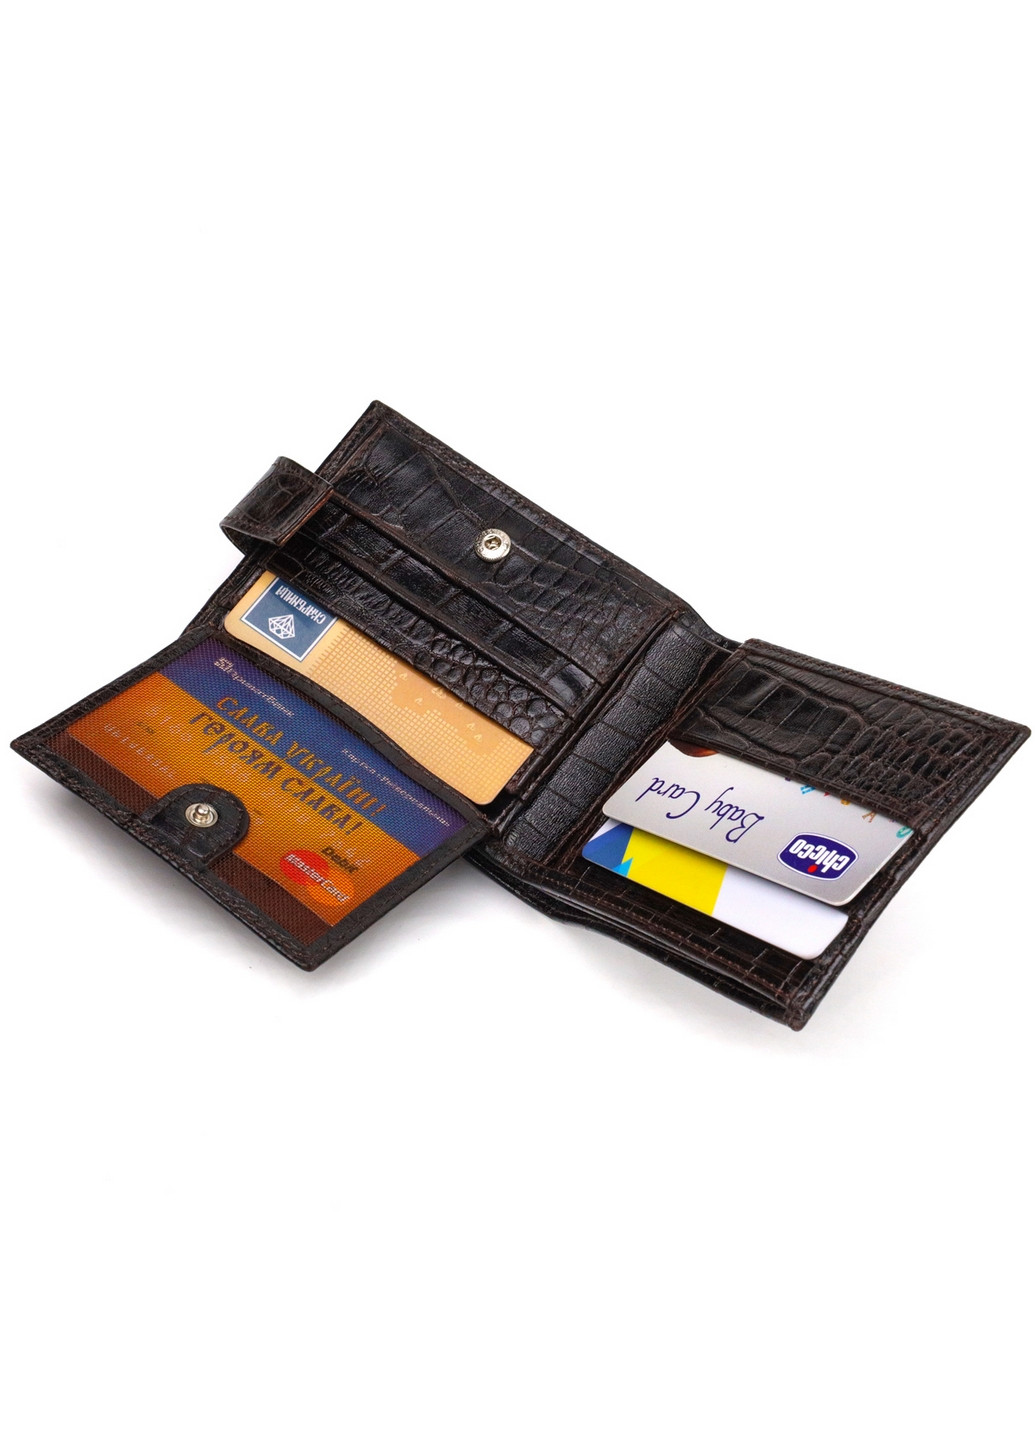 Шкіряний гаманець чоловічий 11х8, 3х1 см Canpellini (259961801)